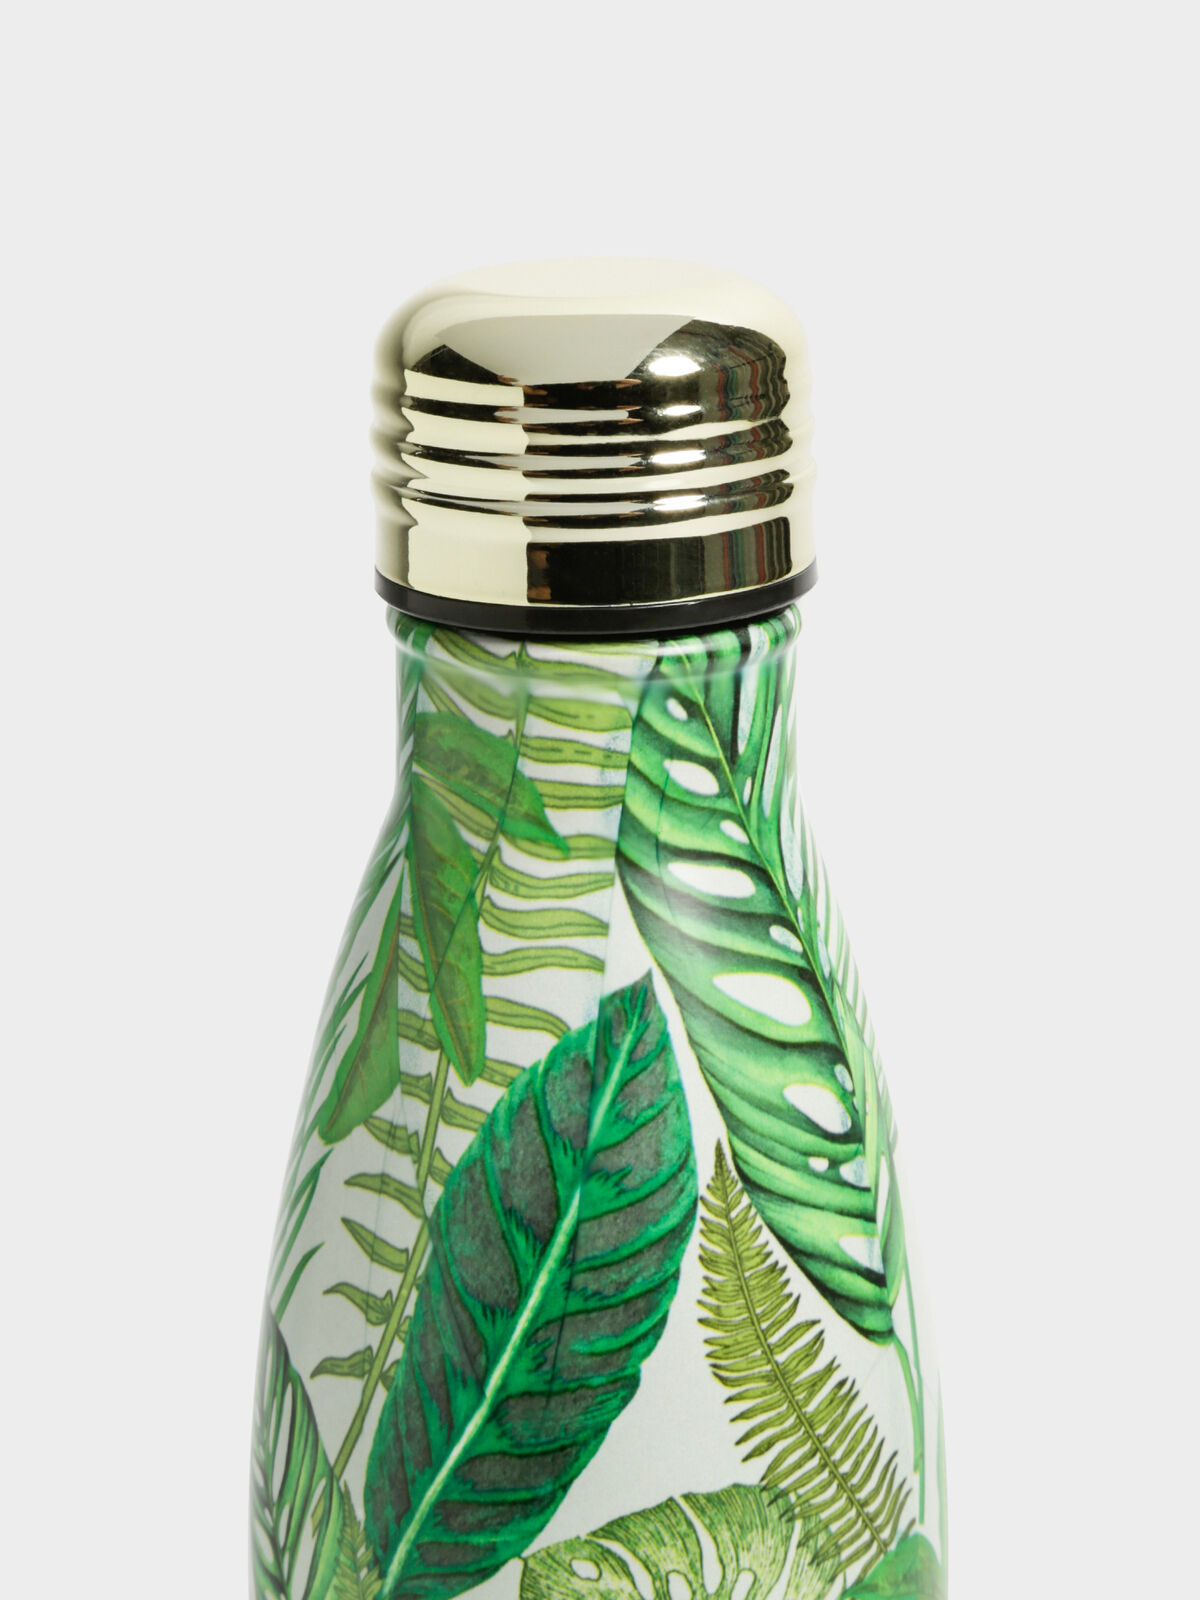 Metal Water Bottle in White Fern Foliage